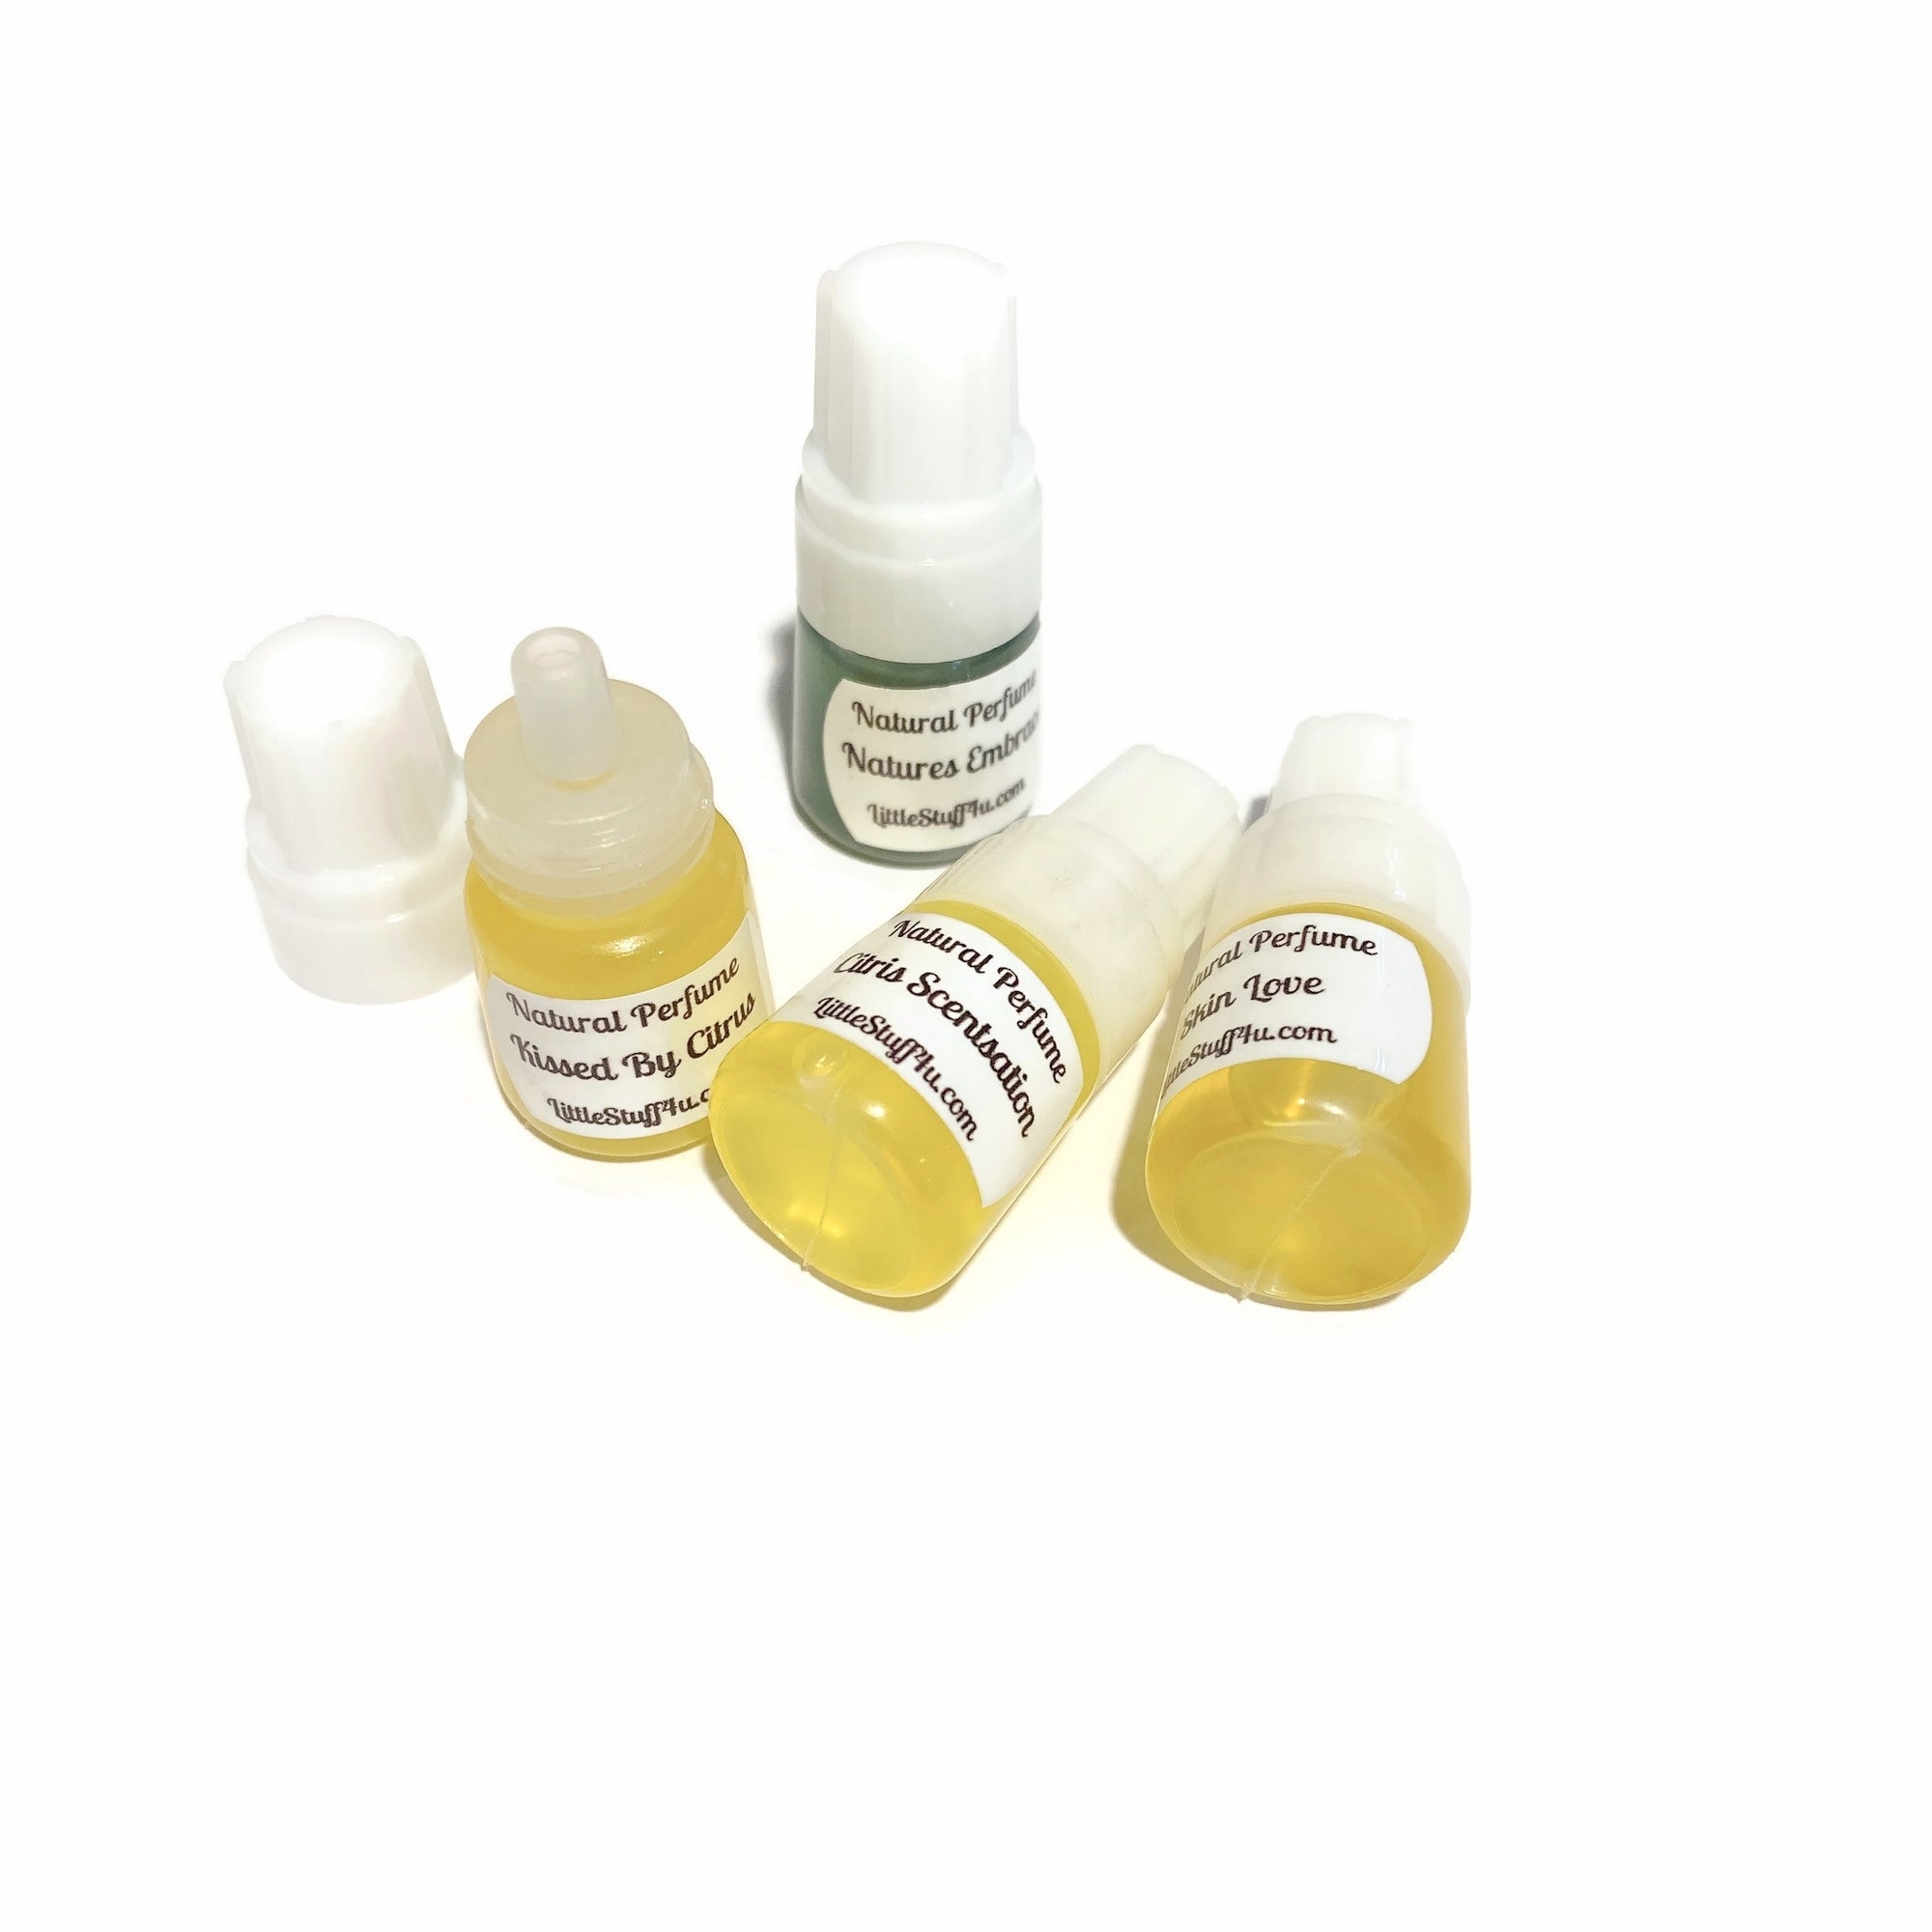 Natural perfume samples